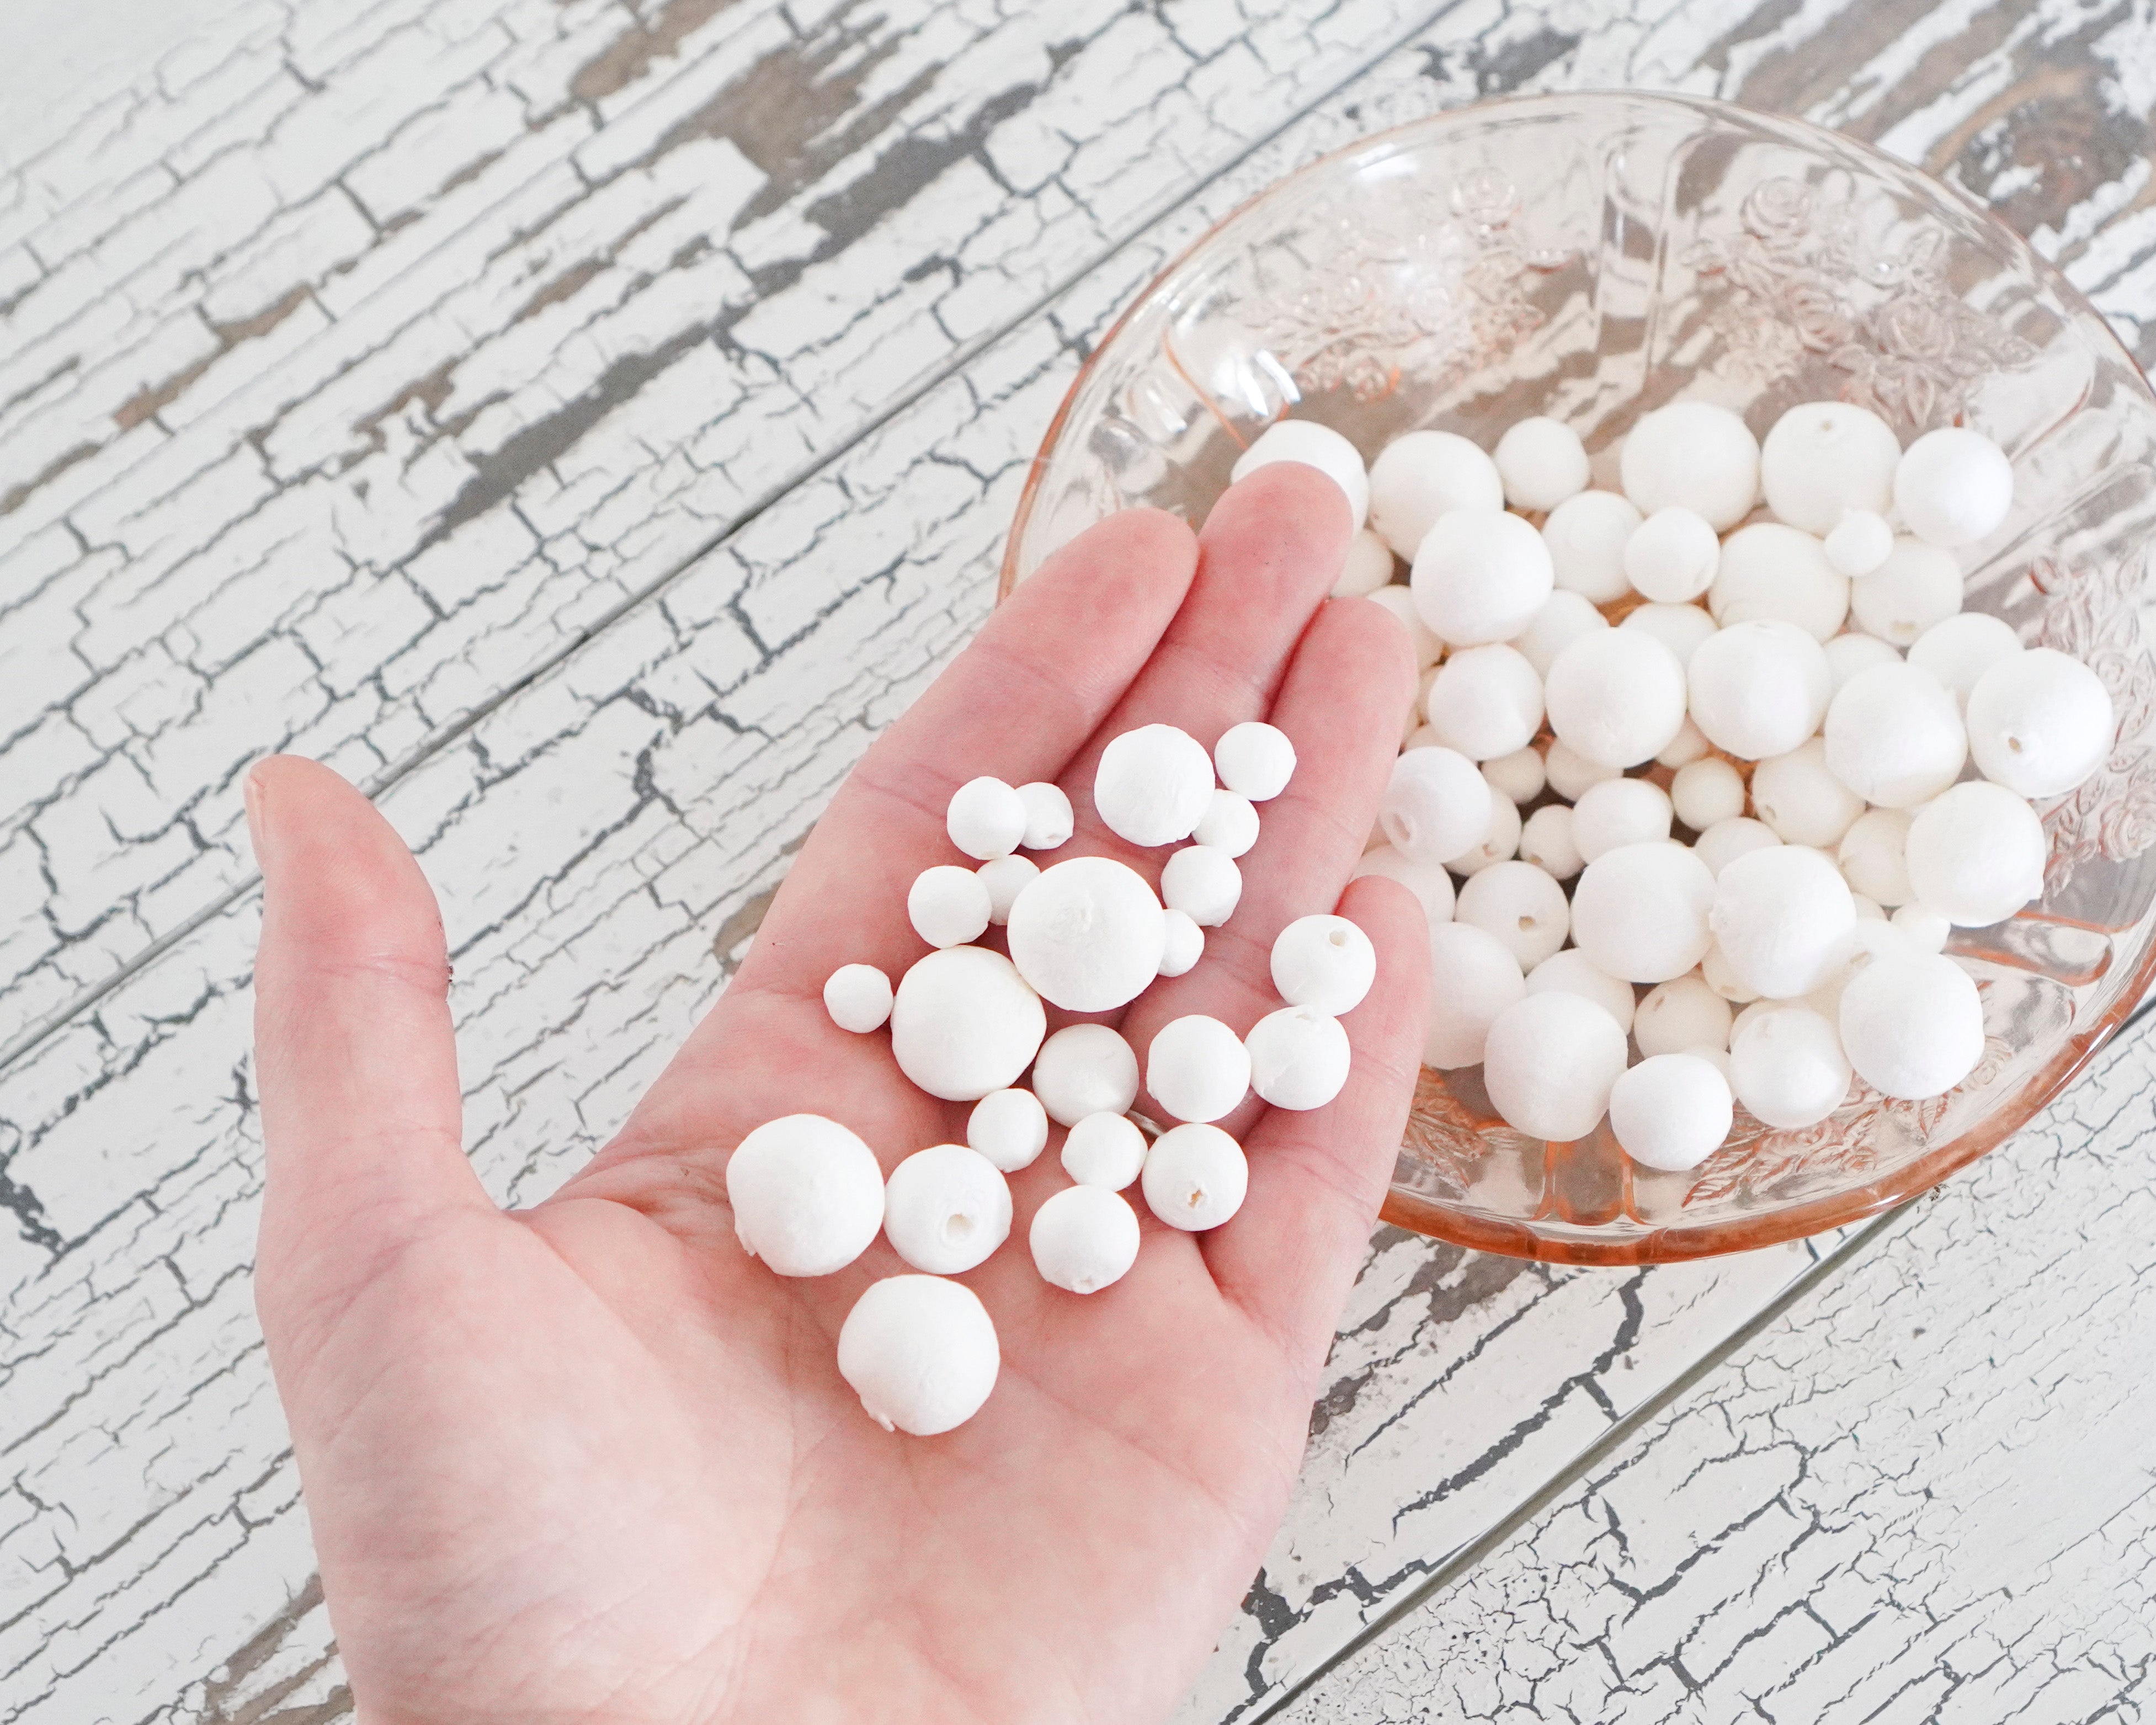 Tiny Spun Cotton Balls Sampler Pack, Mixed Small-Size Paper Ball Craft Shapes, 100 Pcs.